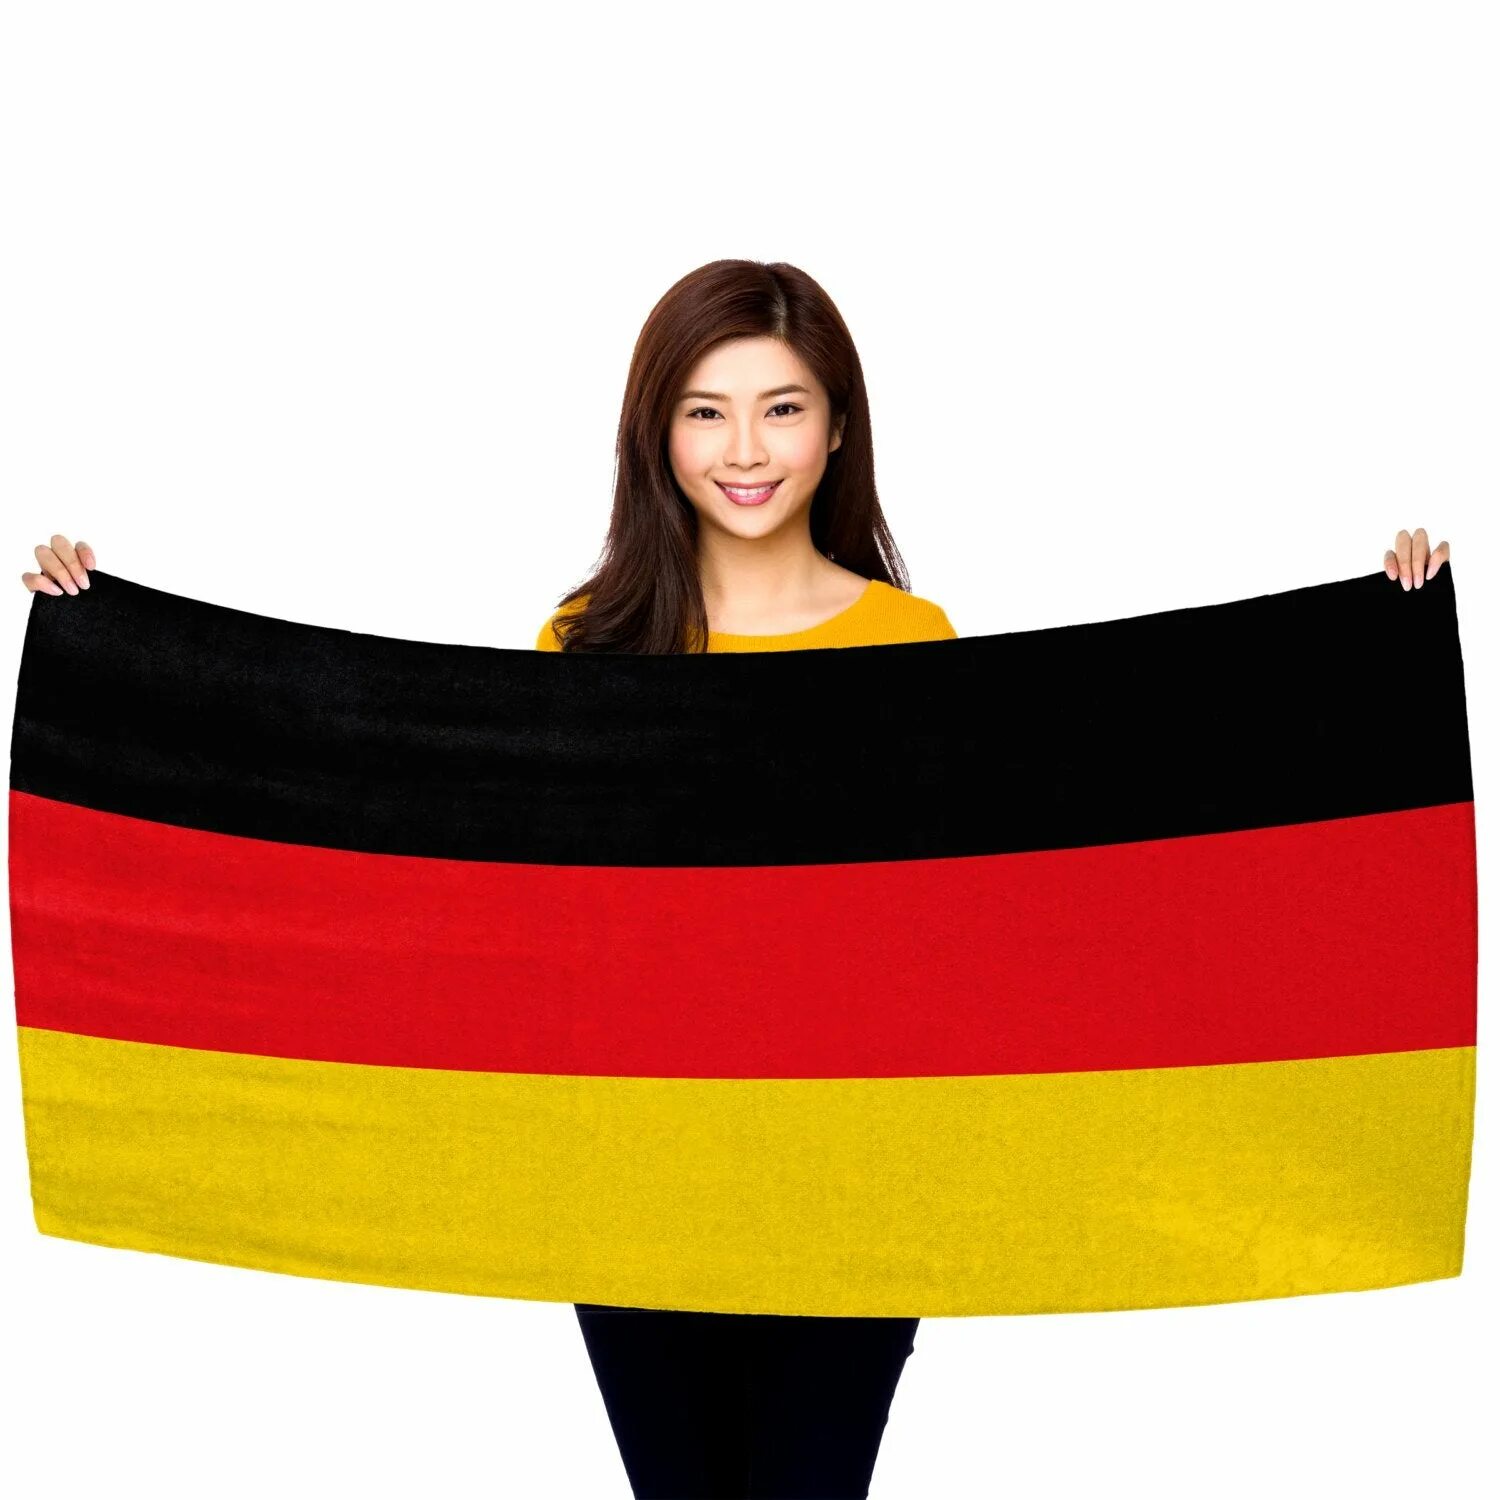 Полотенце флаг. Полотенце Германия. Полотенце немецкий язык. Полотенце с флагом Сицилии.